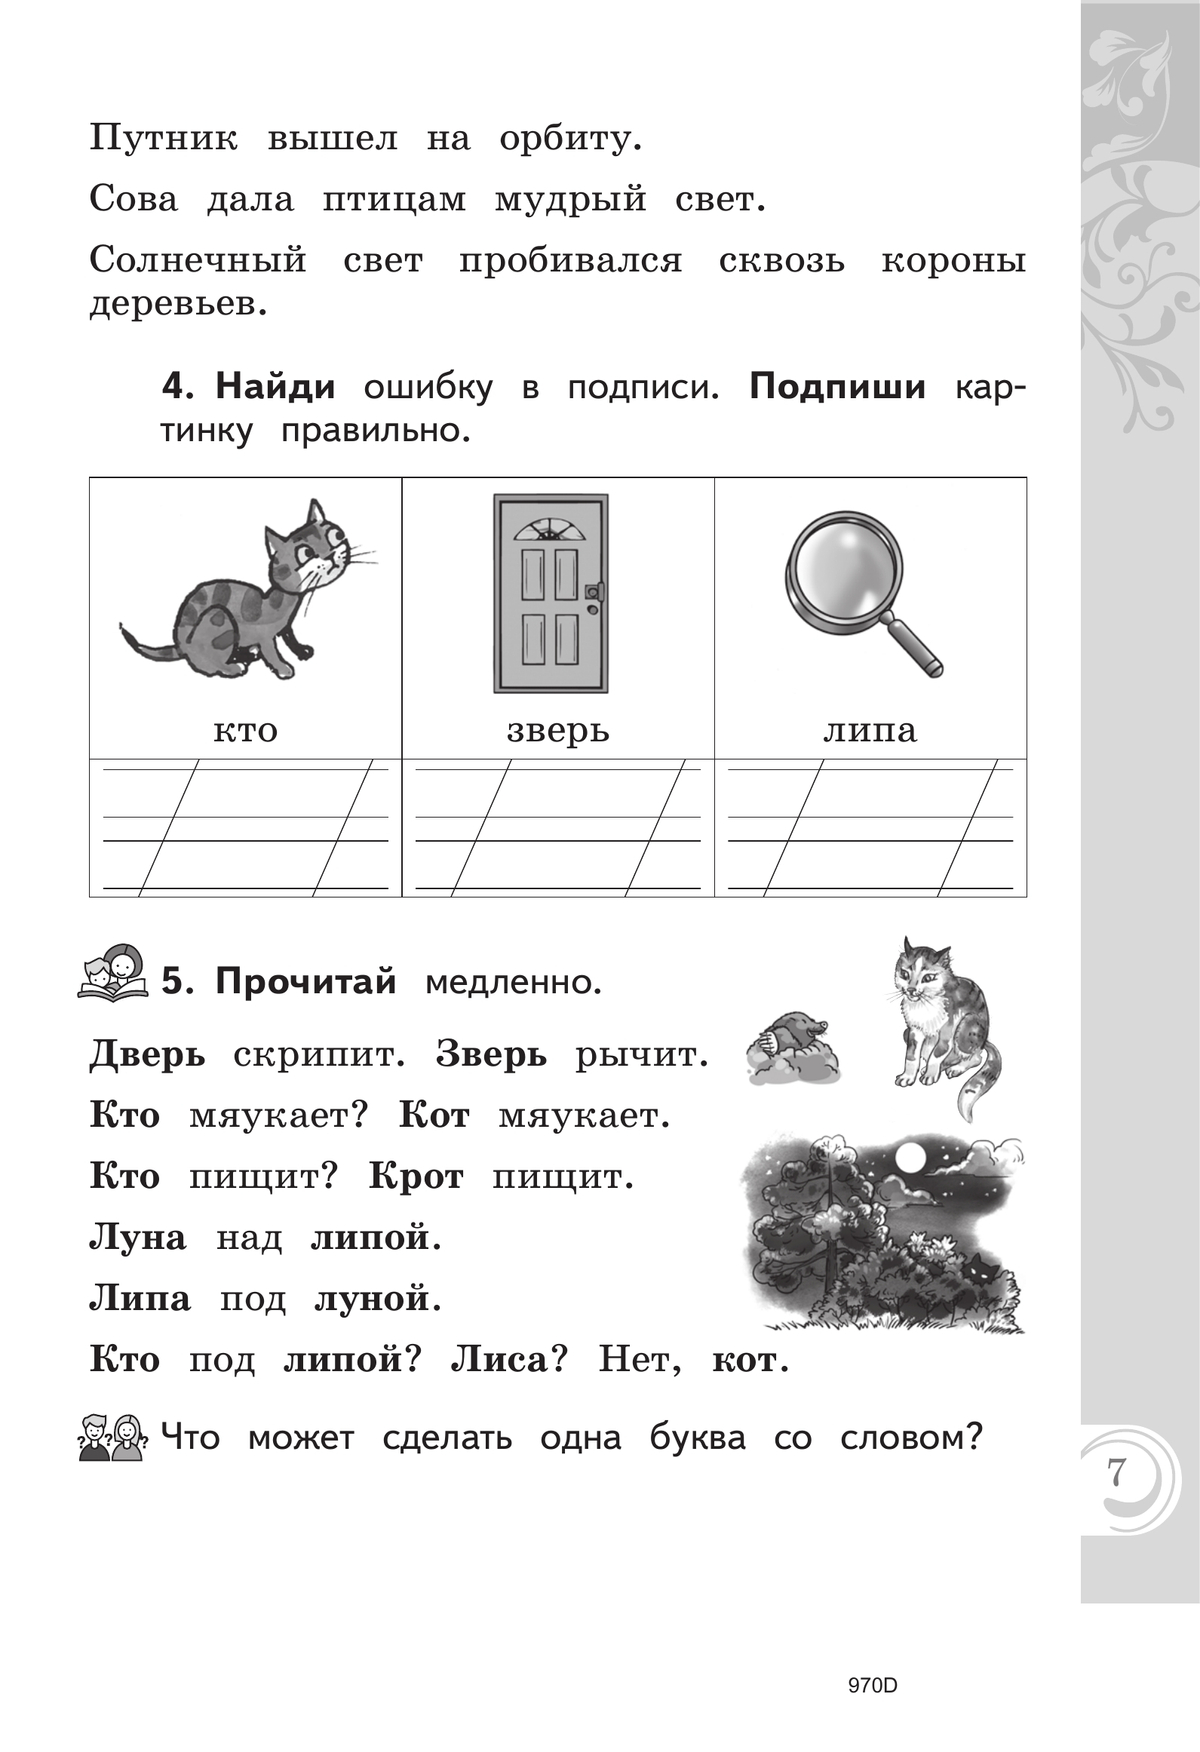 Литературное чтение на русском родном языке. 1 класс. Практикум 7